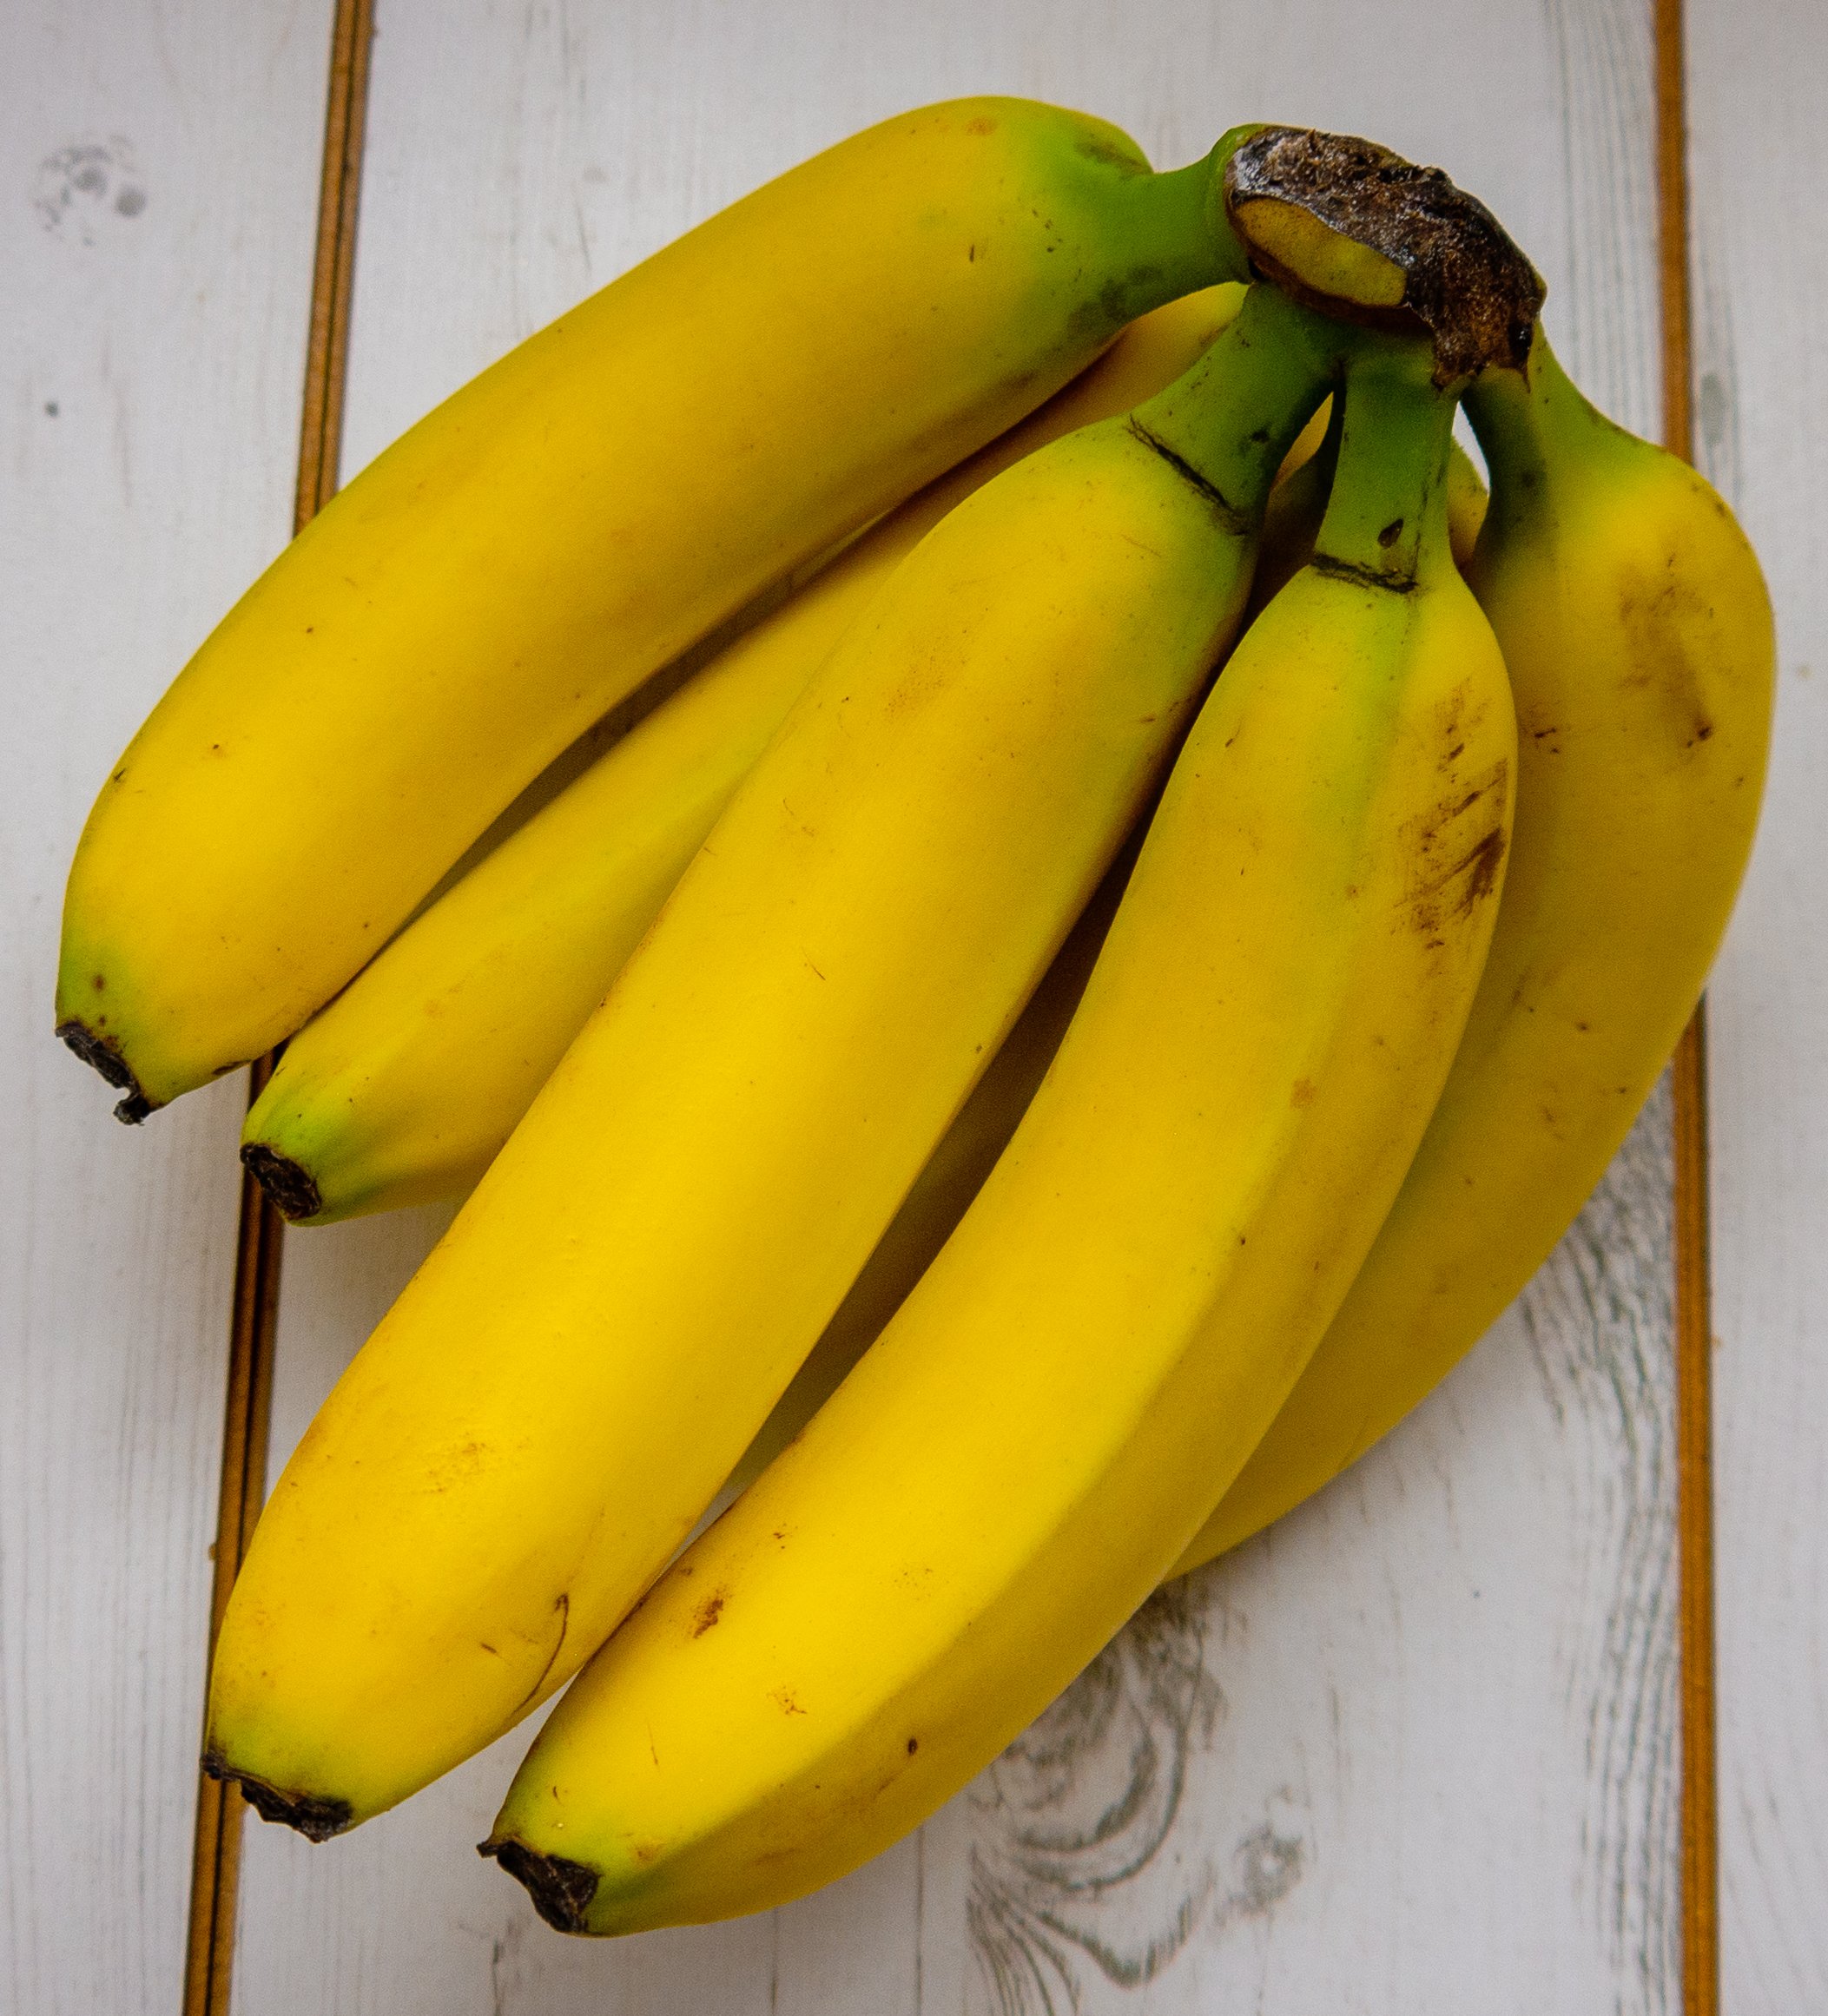 caramelised banana recipe by kam sokhi allergy chef 